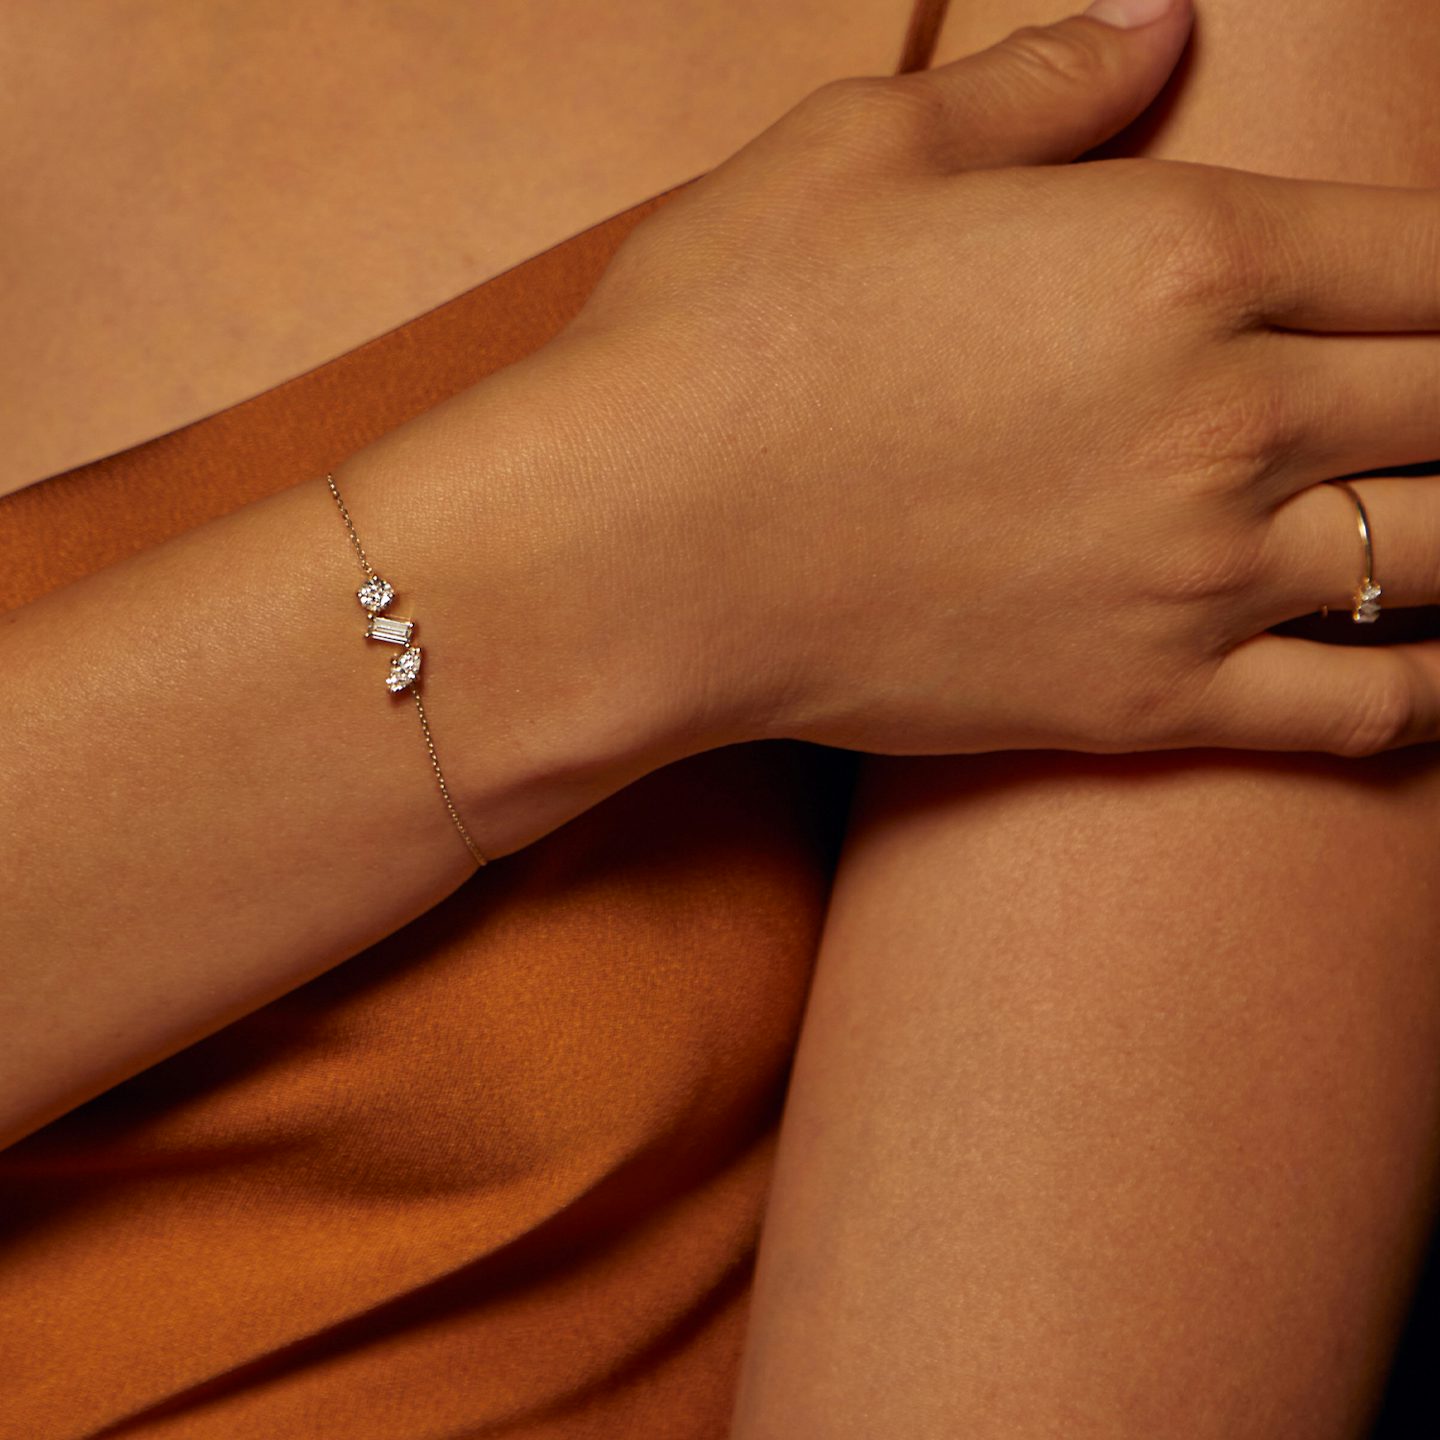 Bracelet Orion | Rond brillant, Baguette et Marquise | 14k | Or jaune 18 carats | Longueur de la chaîne: 7 | Taille des diamants: Petite